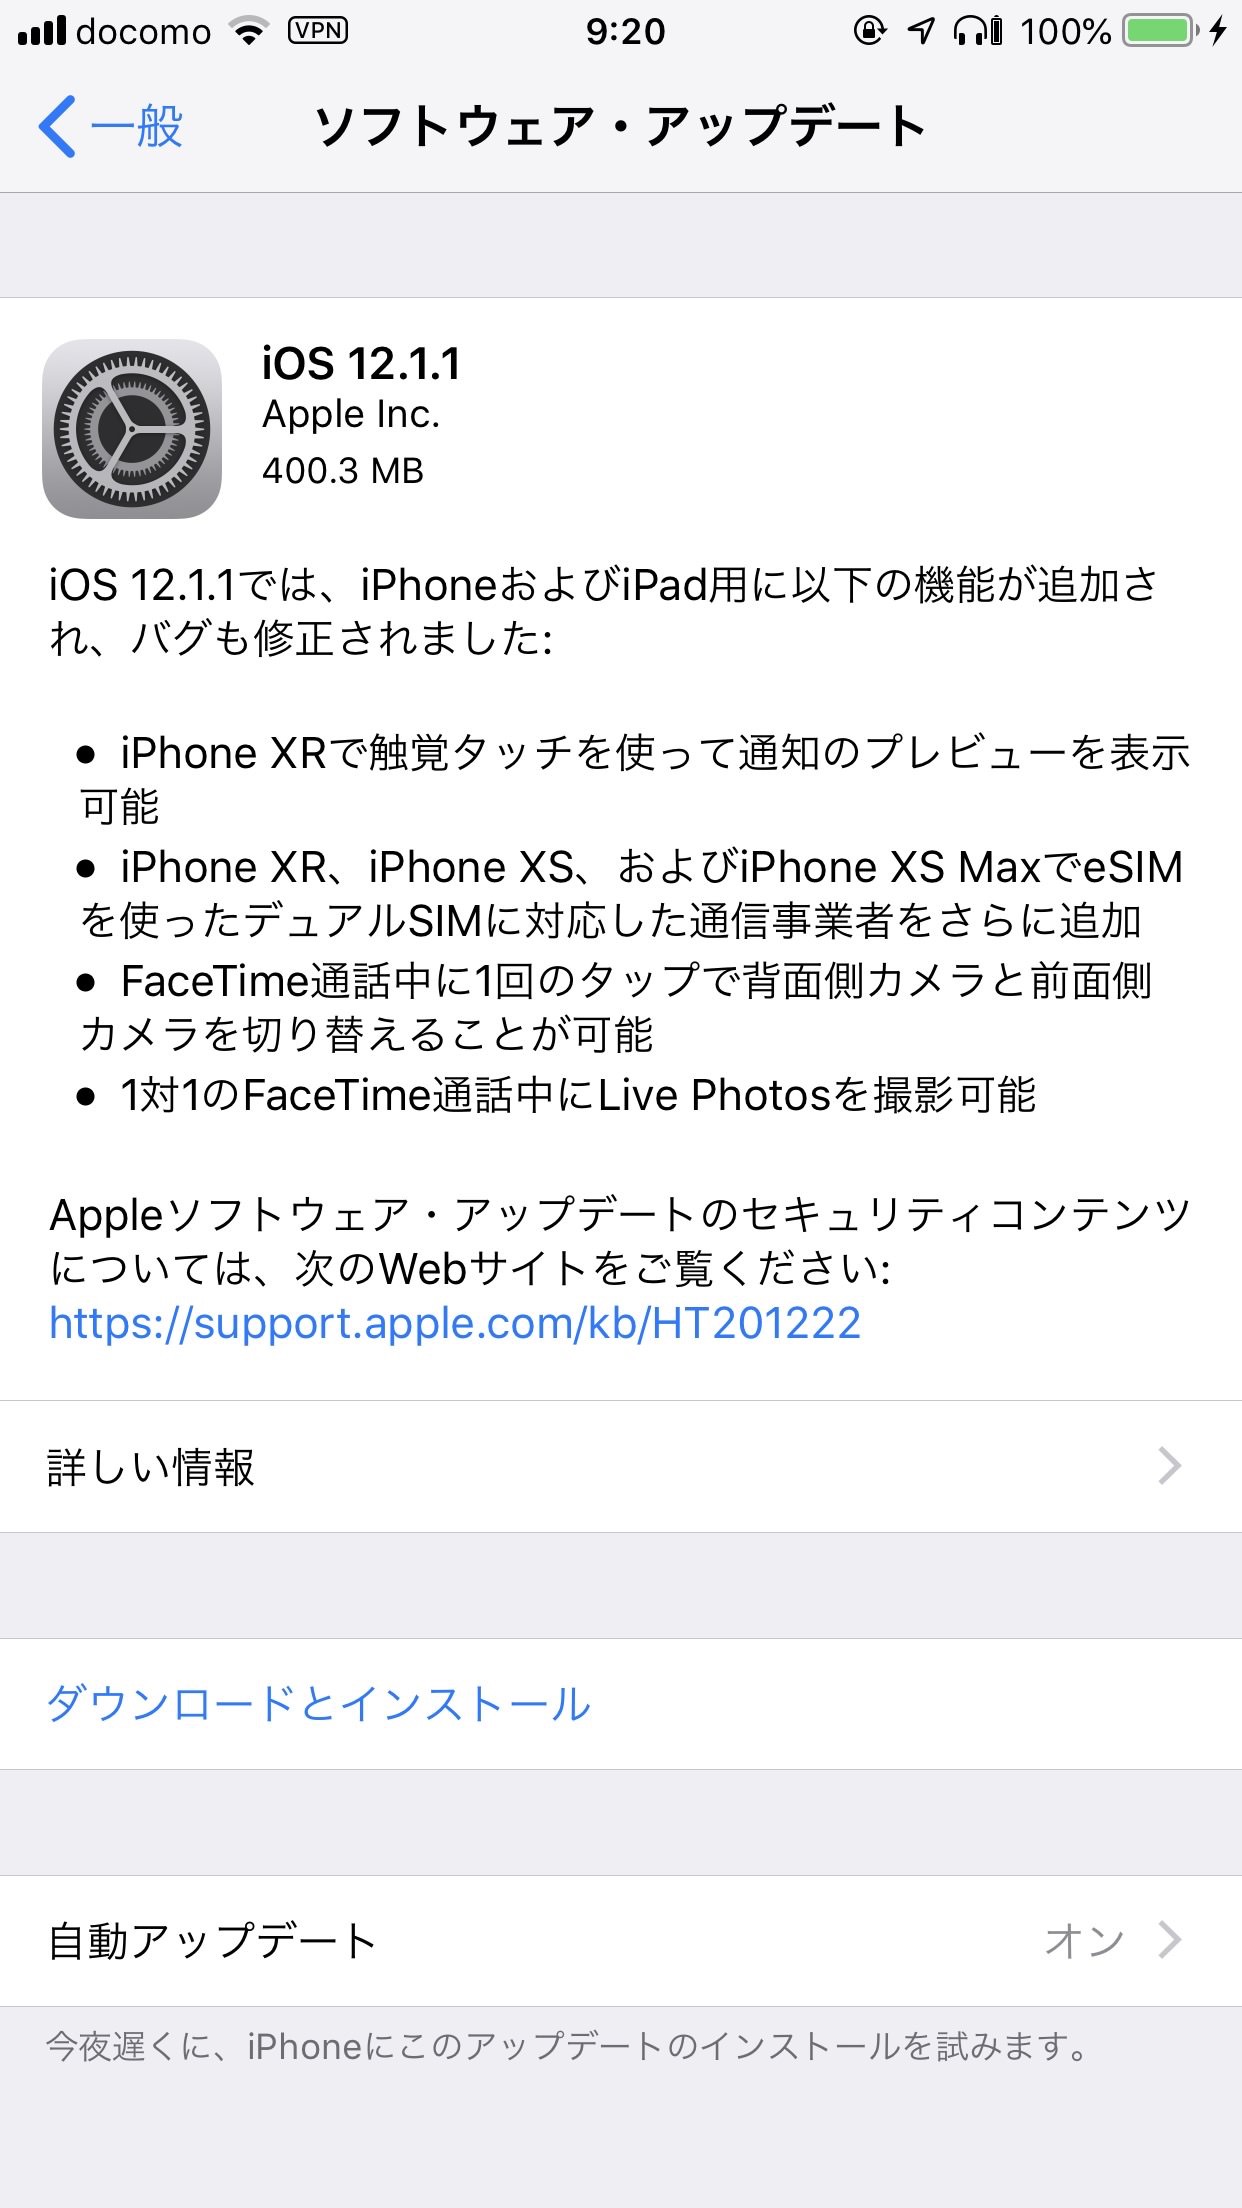 【iOS 12】「iOS 12.1.1 ソフトウェア・アップデート」リリース 〜iPhone XR/XSで機能改善など